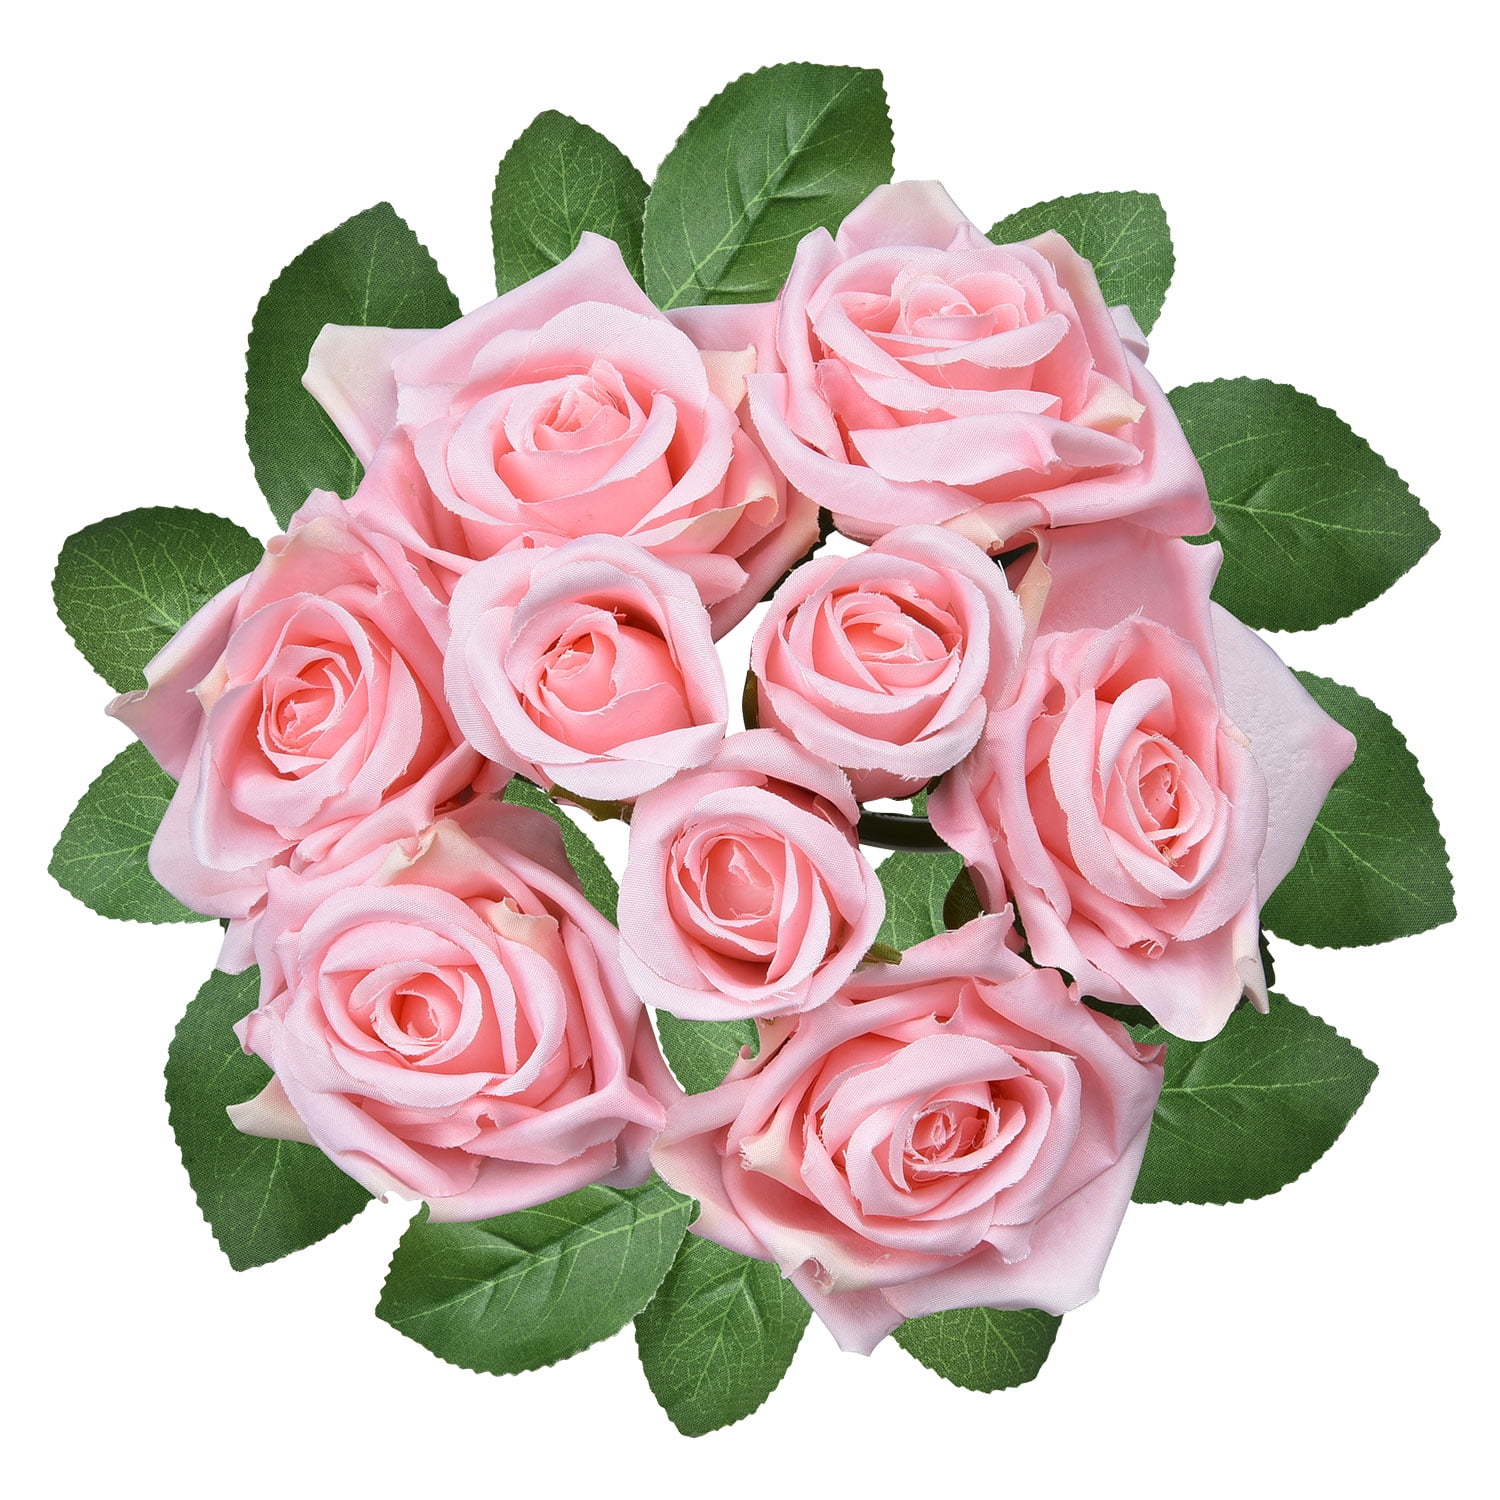 1 Bouquet 15 Heads Artifical Rose Silk Flower Wedding Party Home Decor Gift Hot 